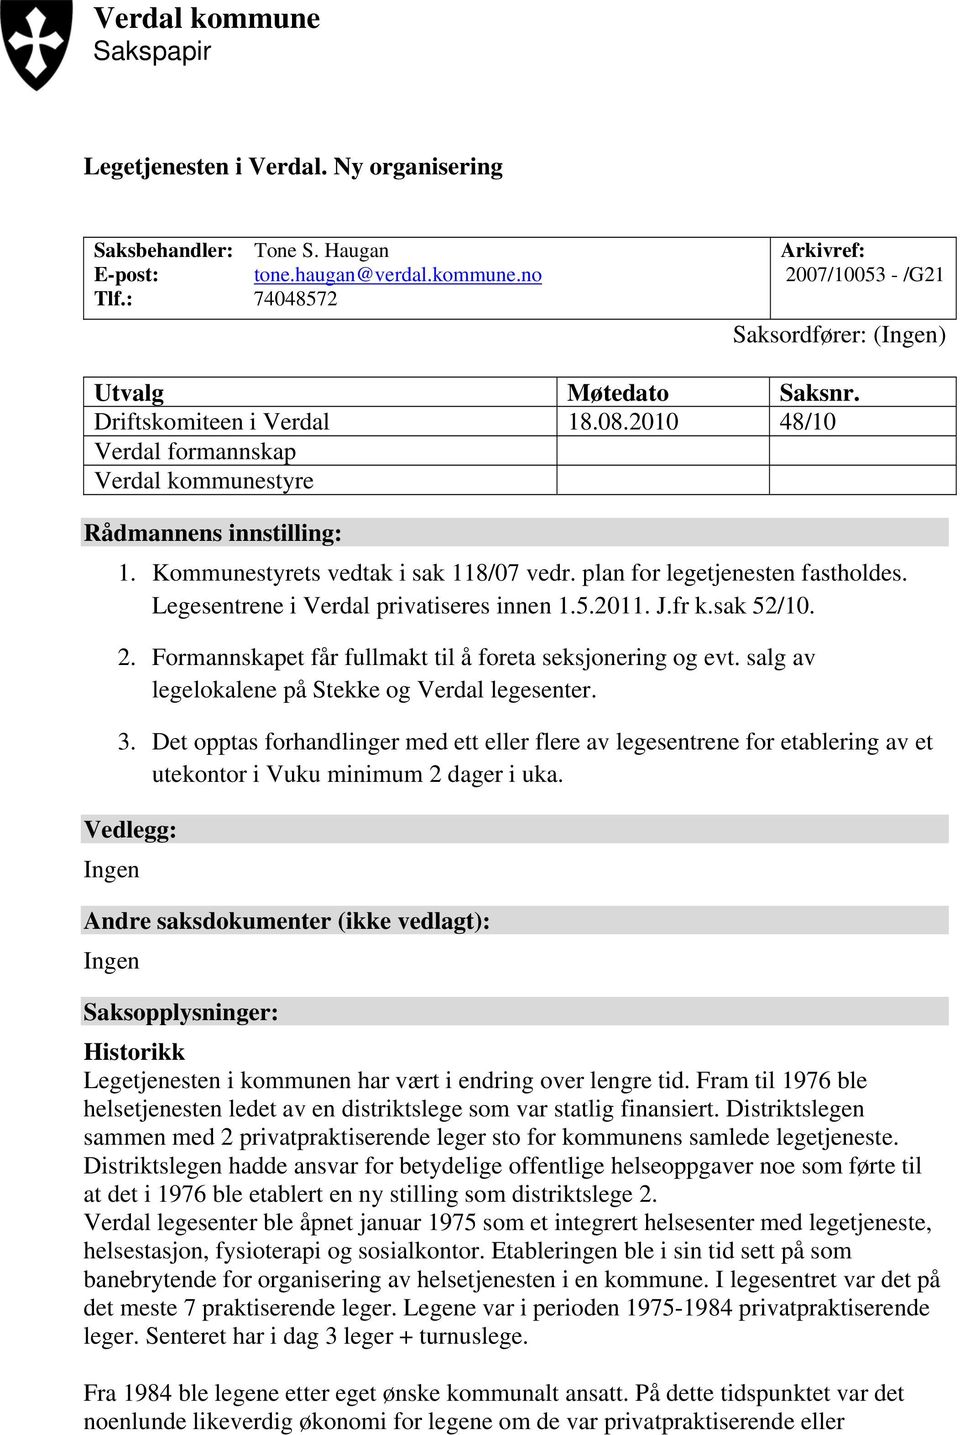 Legesentrene i Verdal privatiseres innen 1.5.2011. J.fr k.sak 52/10. 2. Formannskapet får fullmakt til å foreta seksjonering og evt. salg av legelokalene på Stekke og Verdal legesenter. 3.